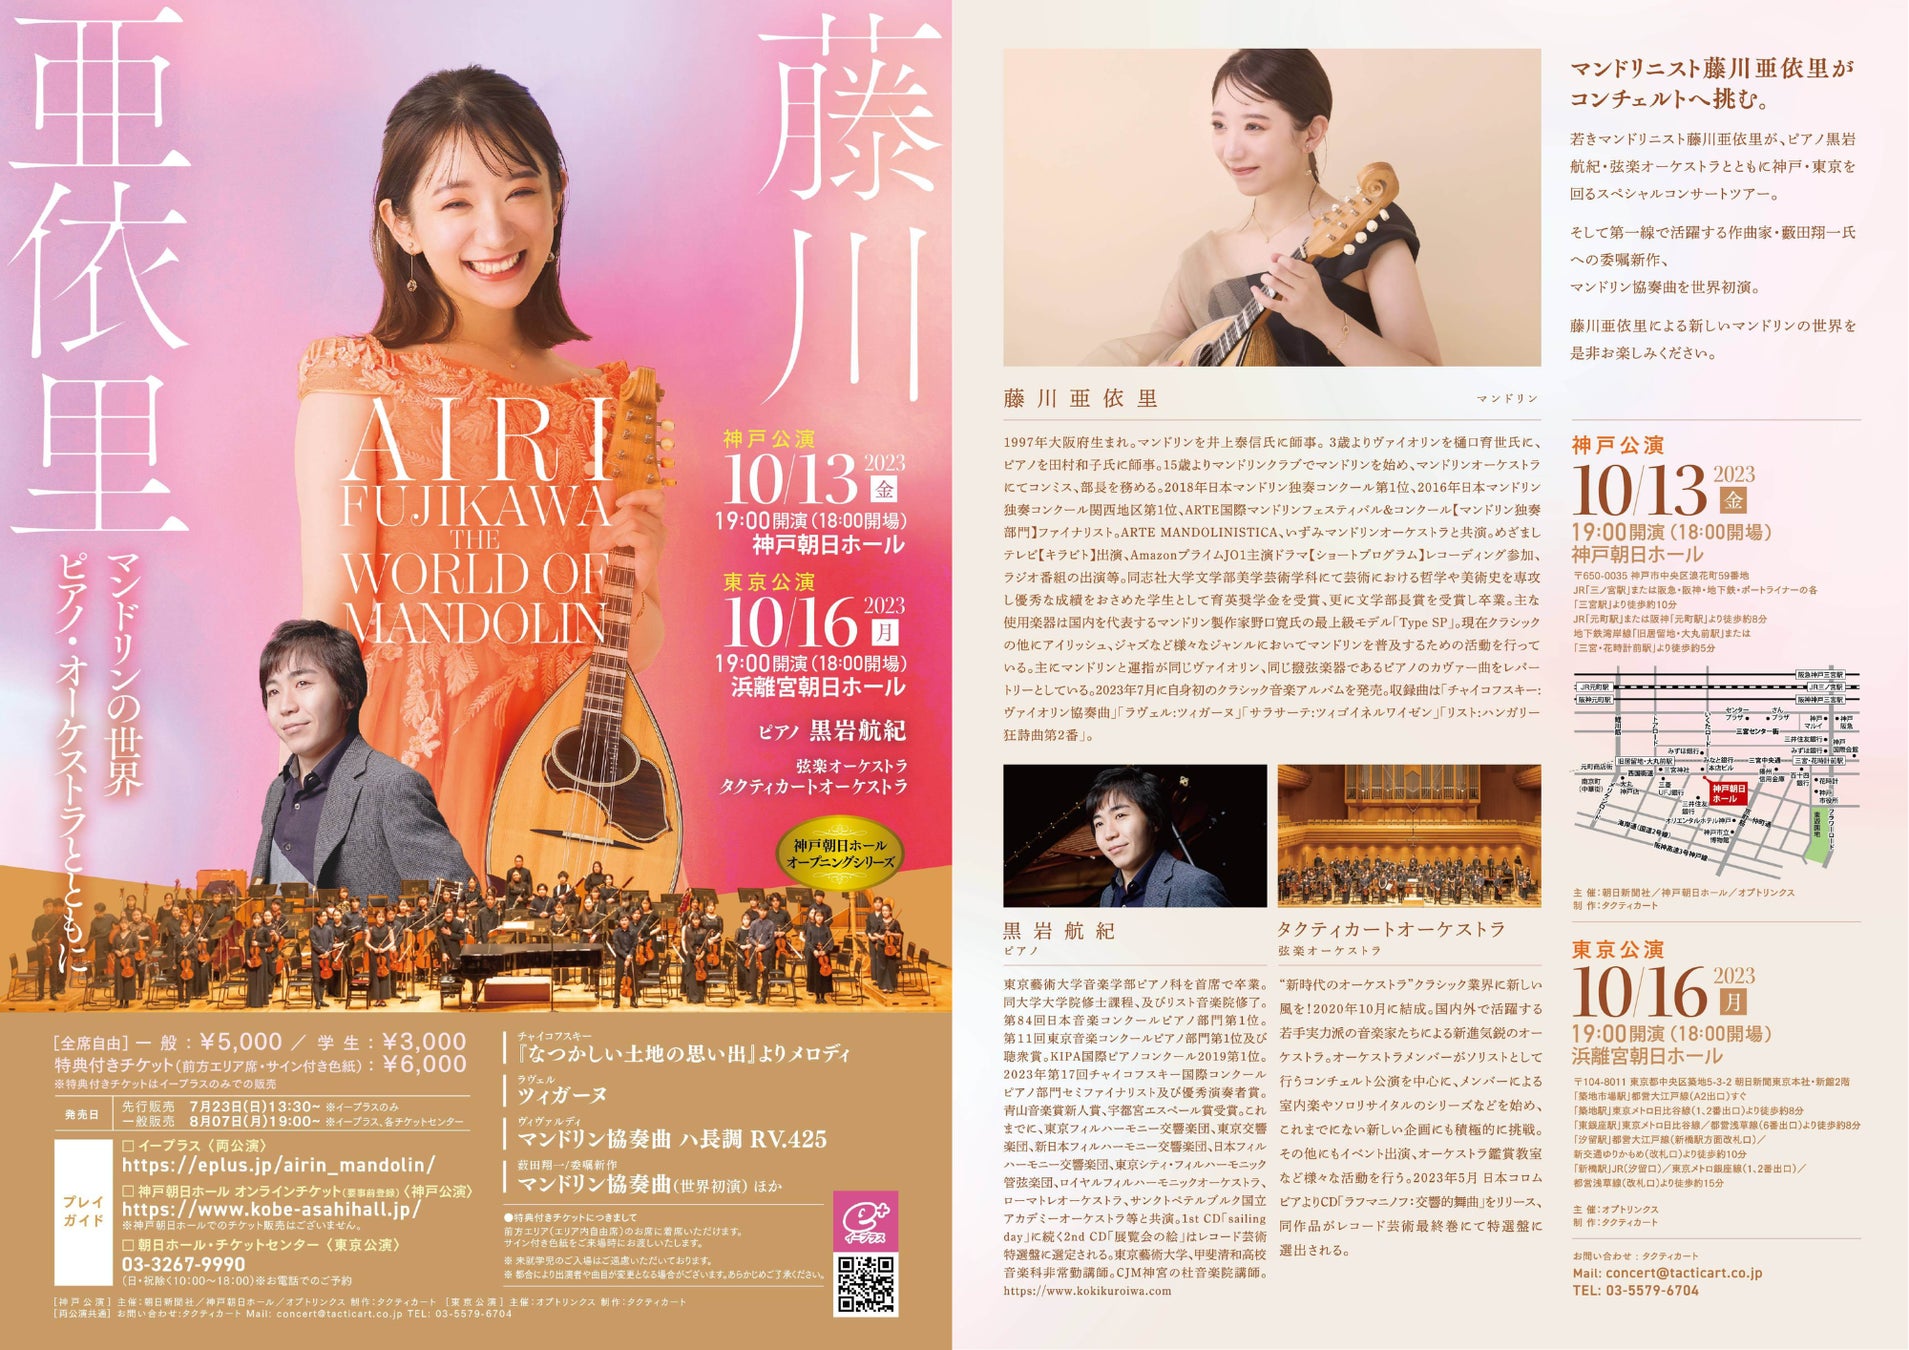 藤川亜依里 マンドリンの世界 -ピアノ・ オーケストラとともに- 開催のお知らせのサブ画像1